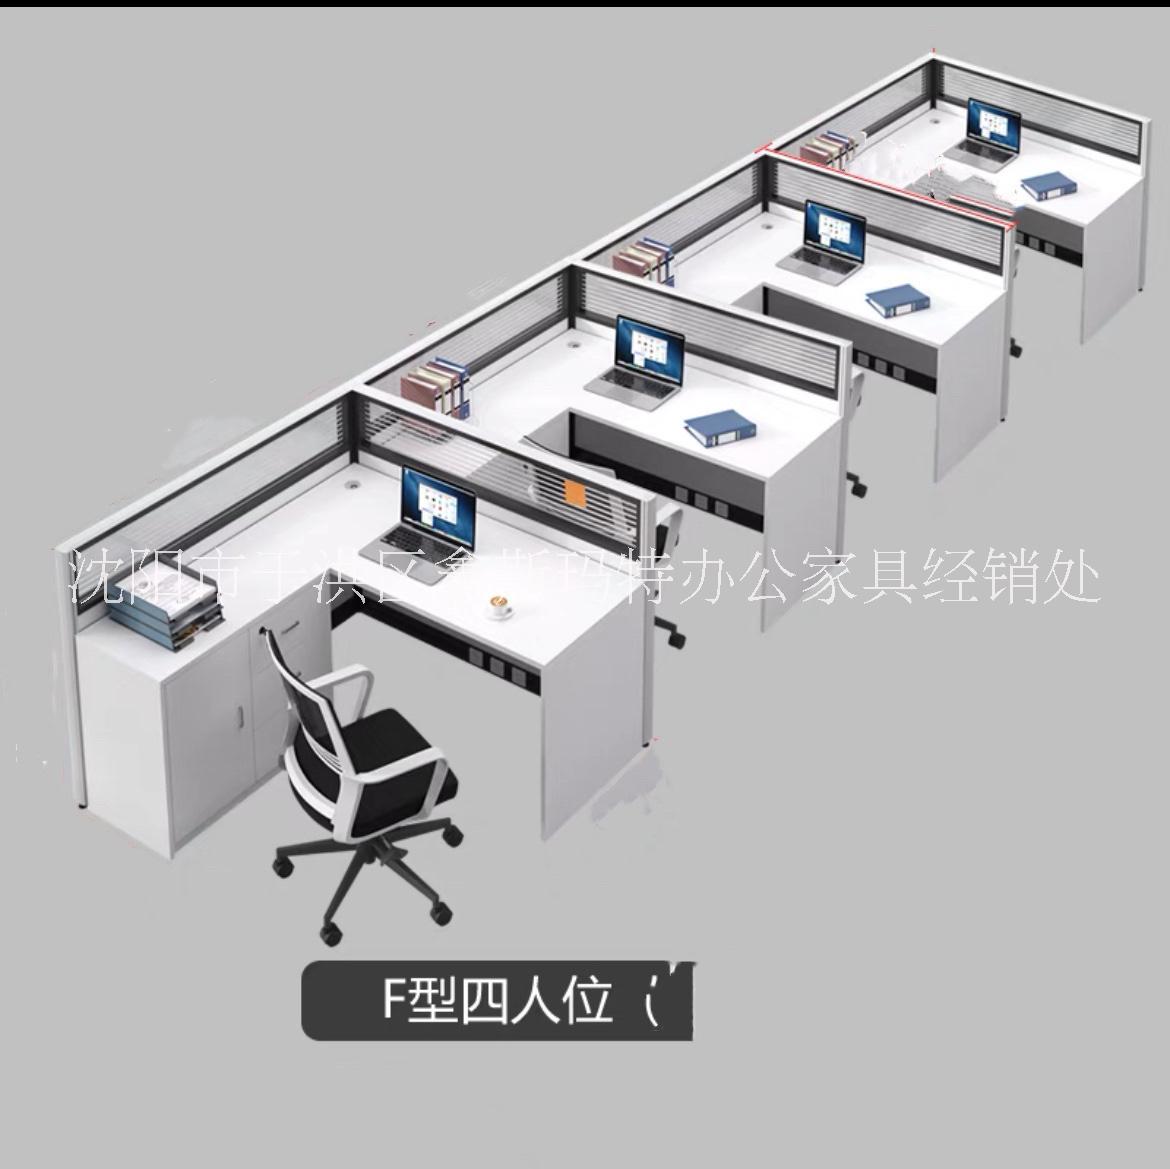 隔断办公桌沈阳现代简约职员屏风隔断组合办公桌双人卡位工位桌单人电脑桌图片